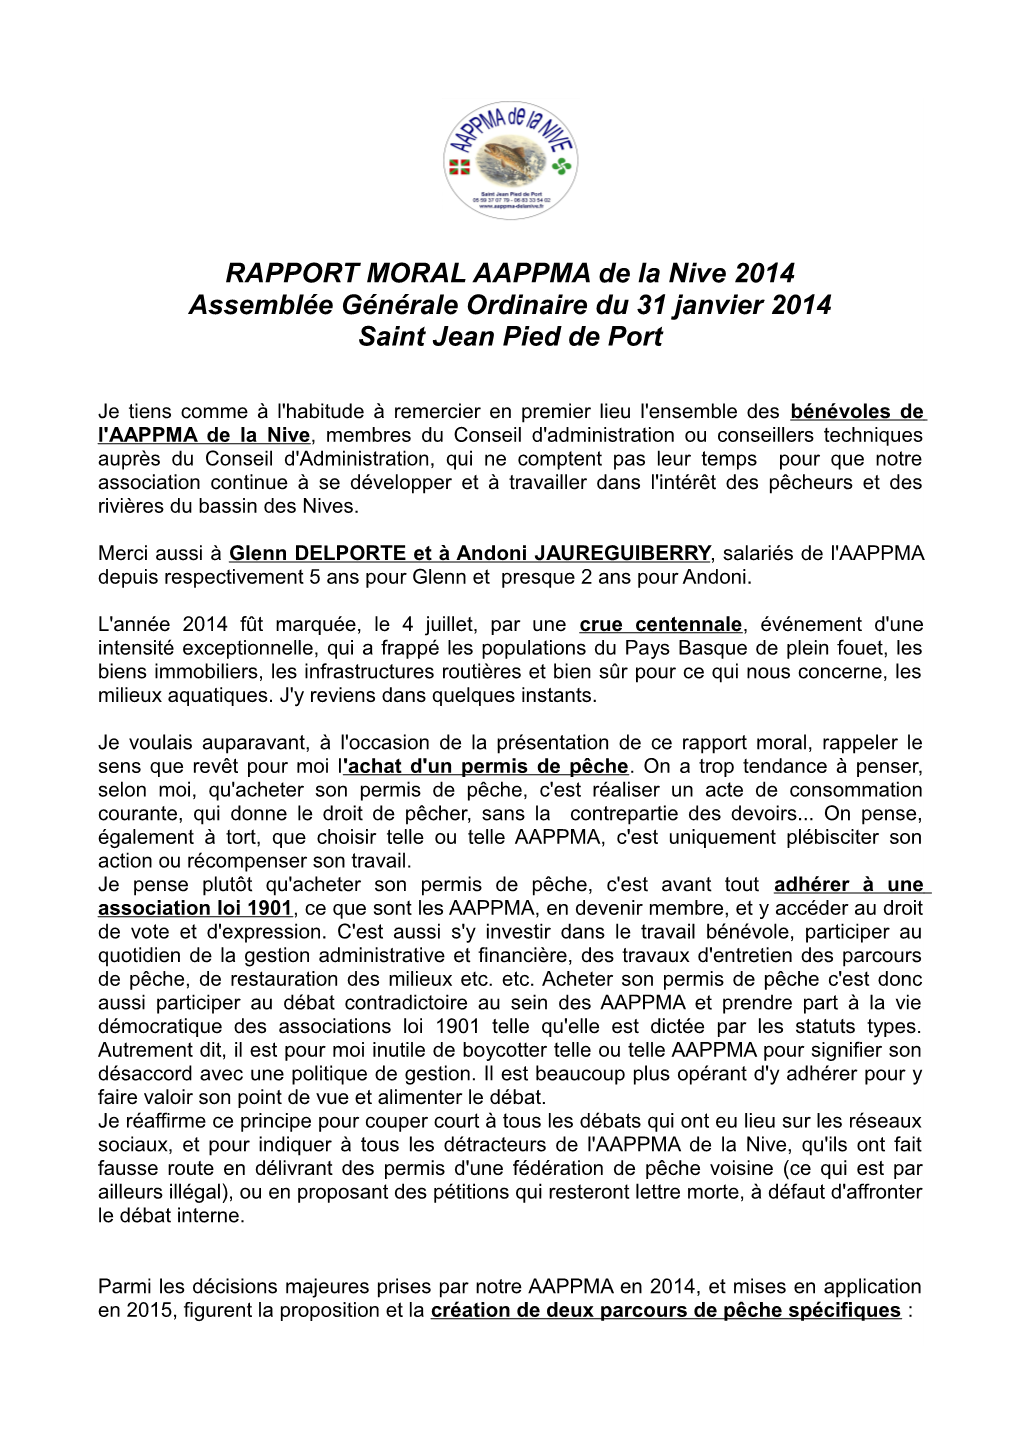 RAPPORT MORAL AAPPMA De La Nive 2014 Assemblée Générale Ordinaire Du 31 Janvier 2014 Saint Jean Pied De Port